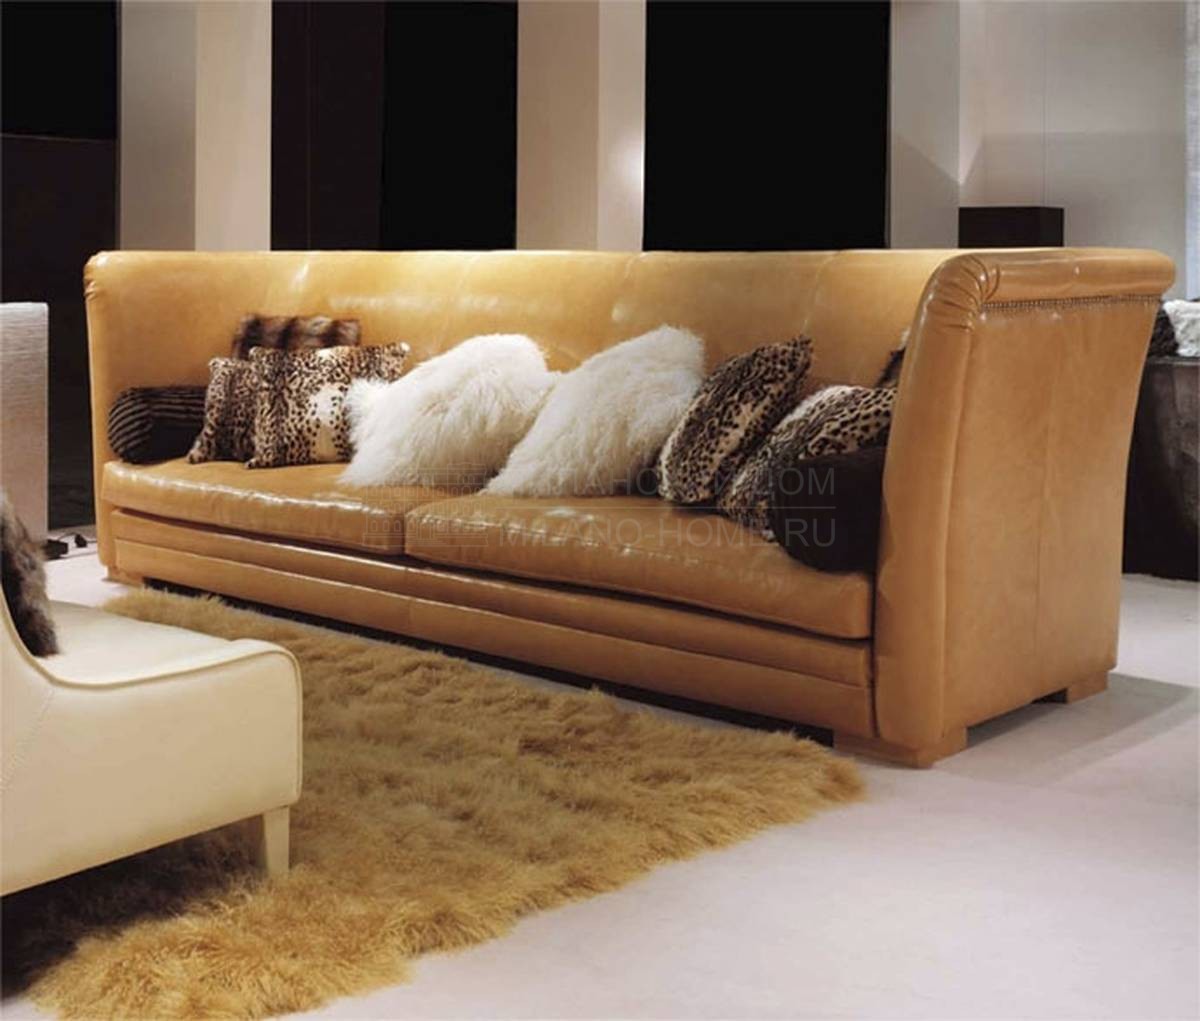 Прямой диван George Sofa из Италии фабрики ULIVI